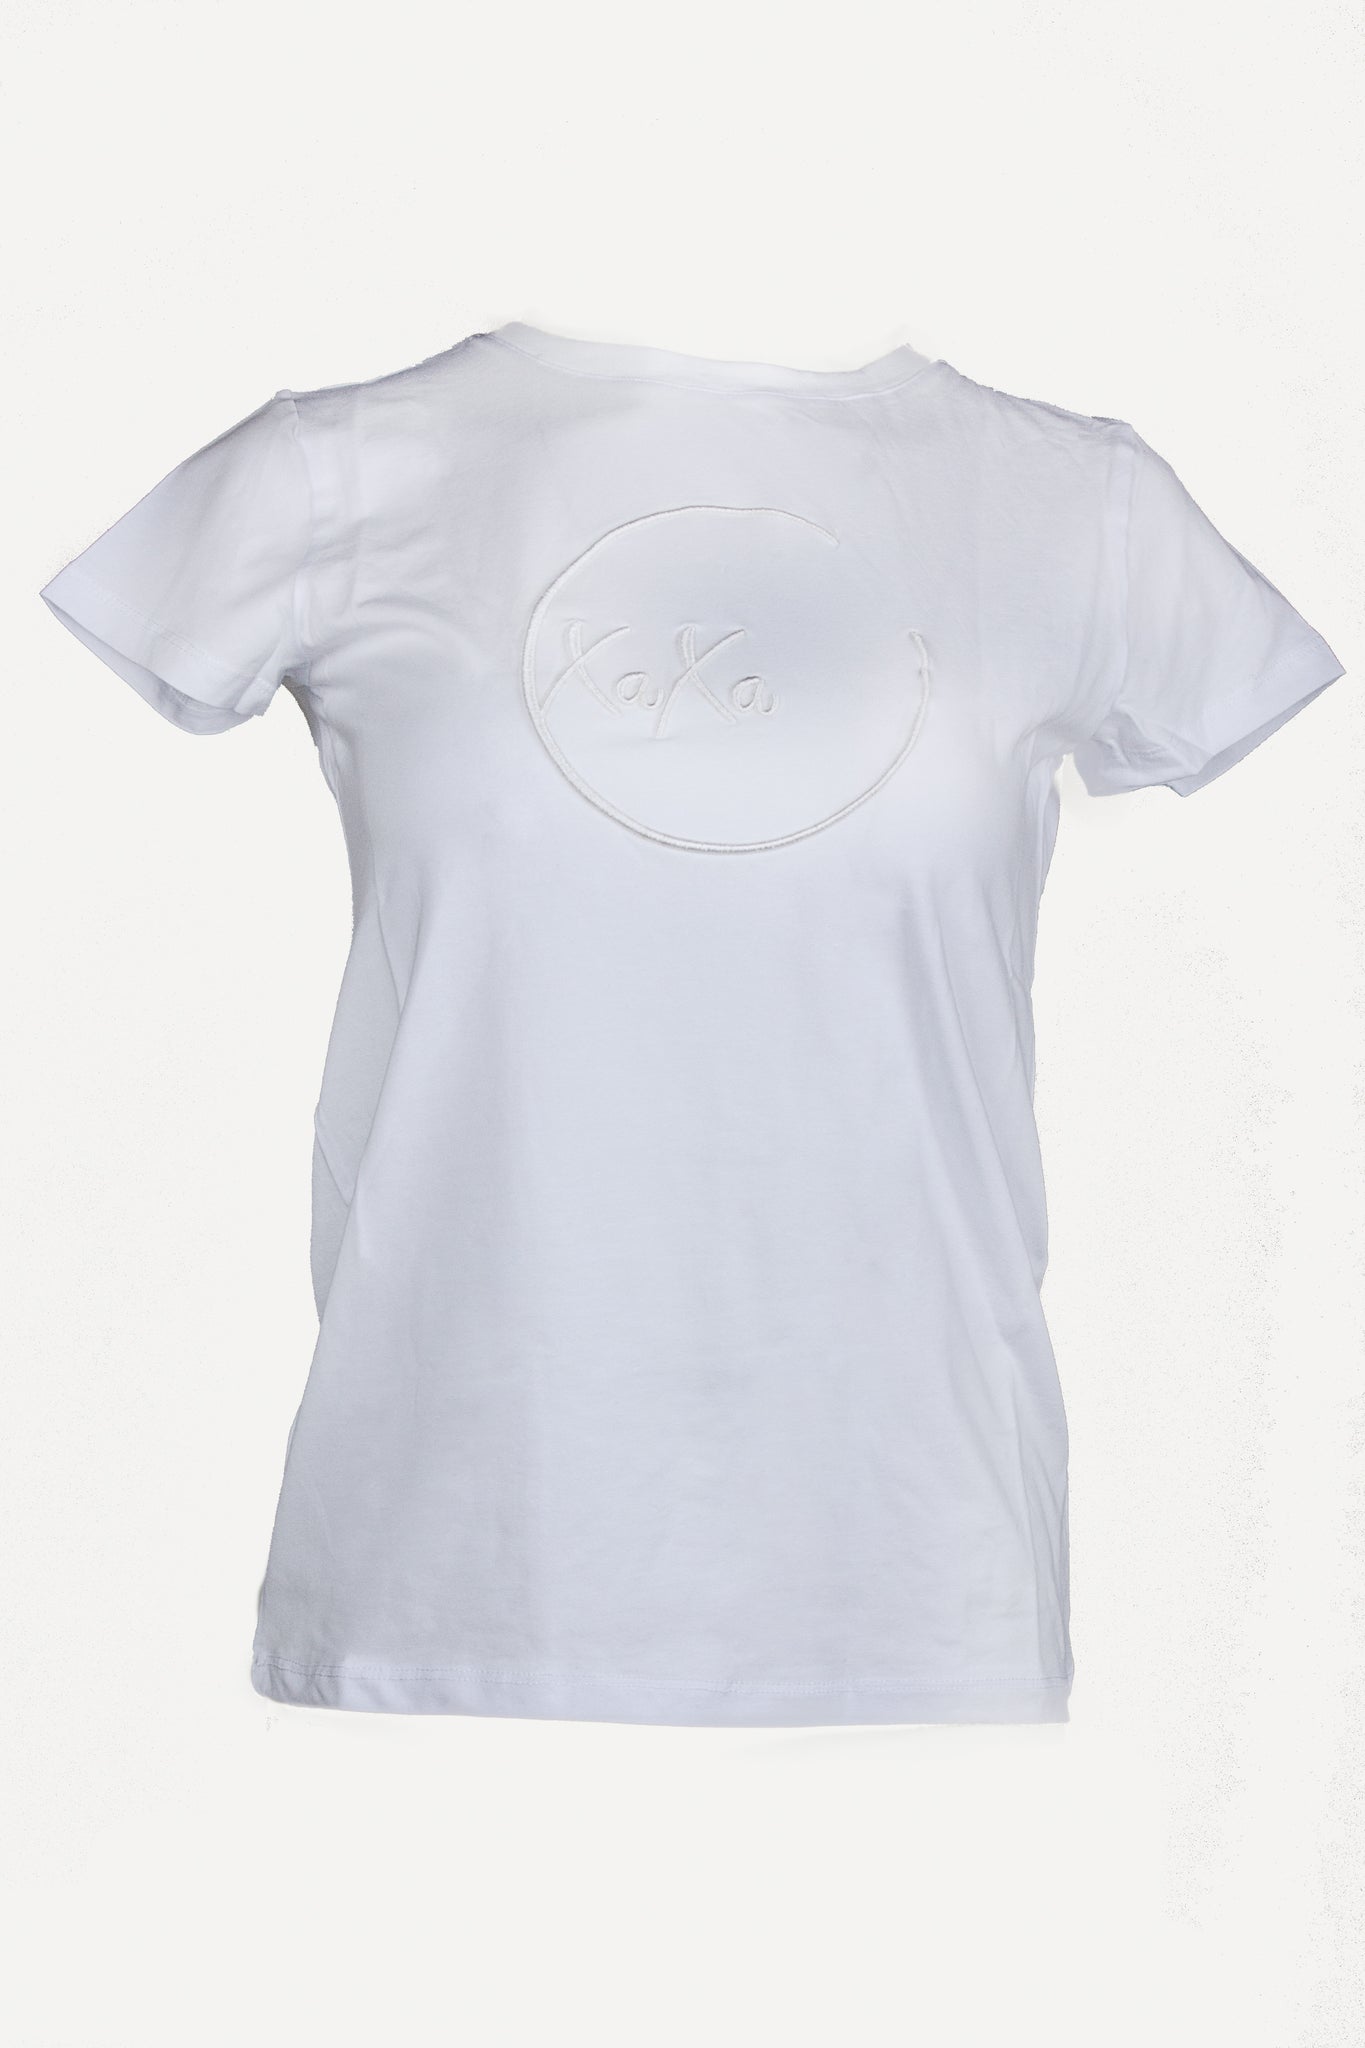 XaXa - White Logo on White T-Shirt